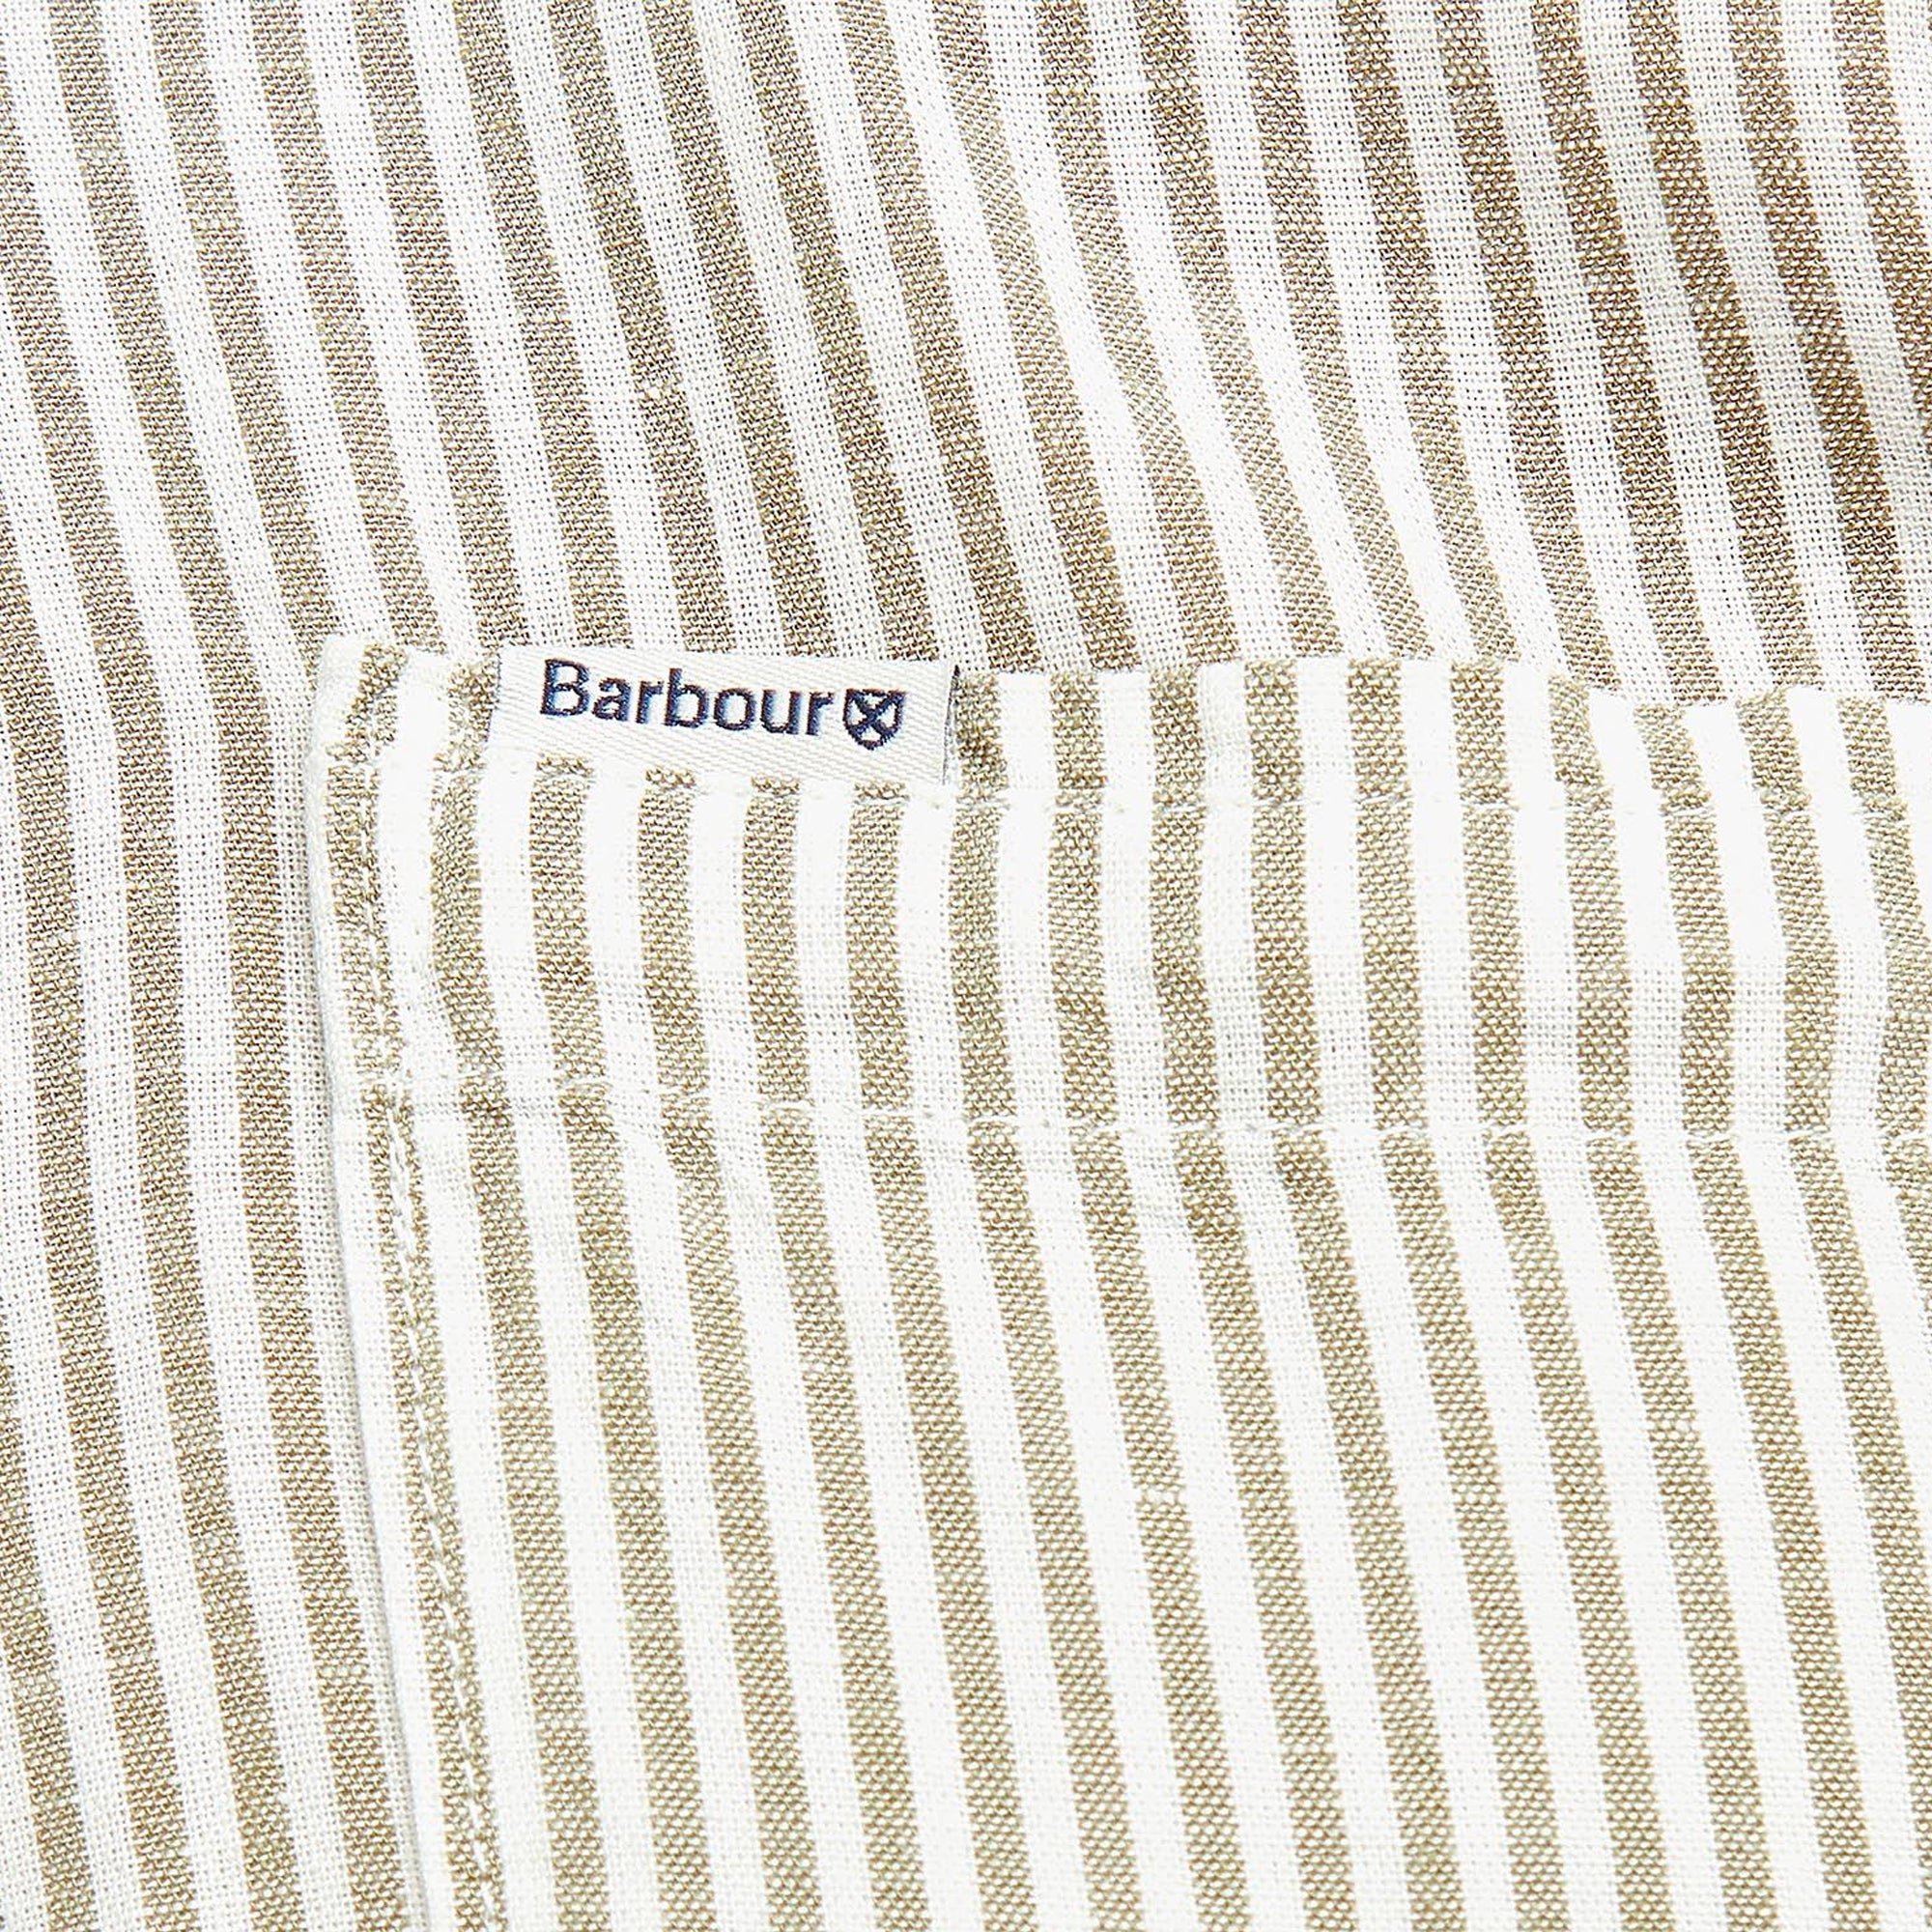 Barbour Deerpark Short Sleeve Linen Shirt - Olive Stripe